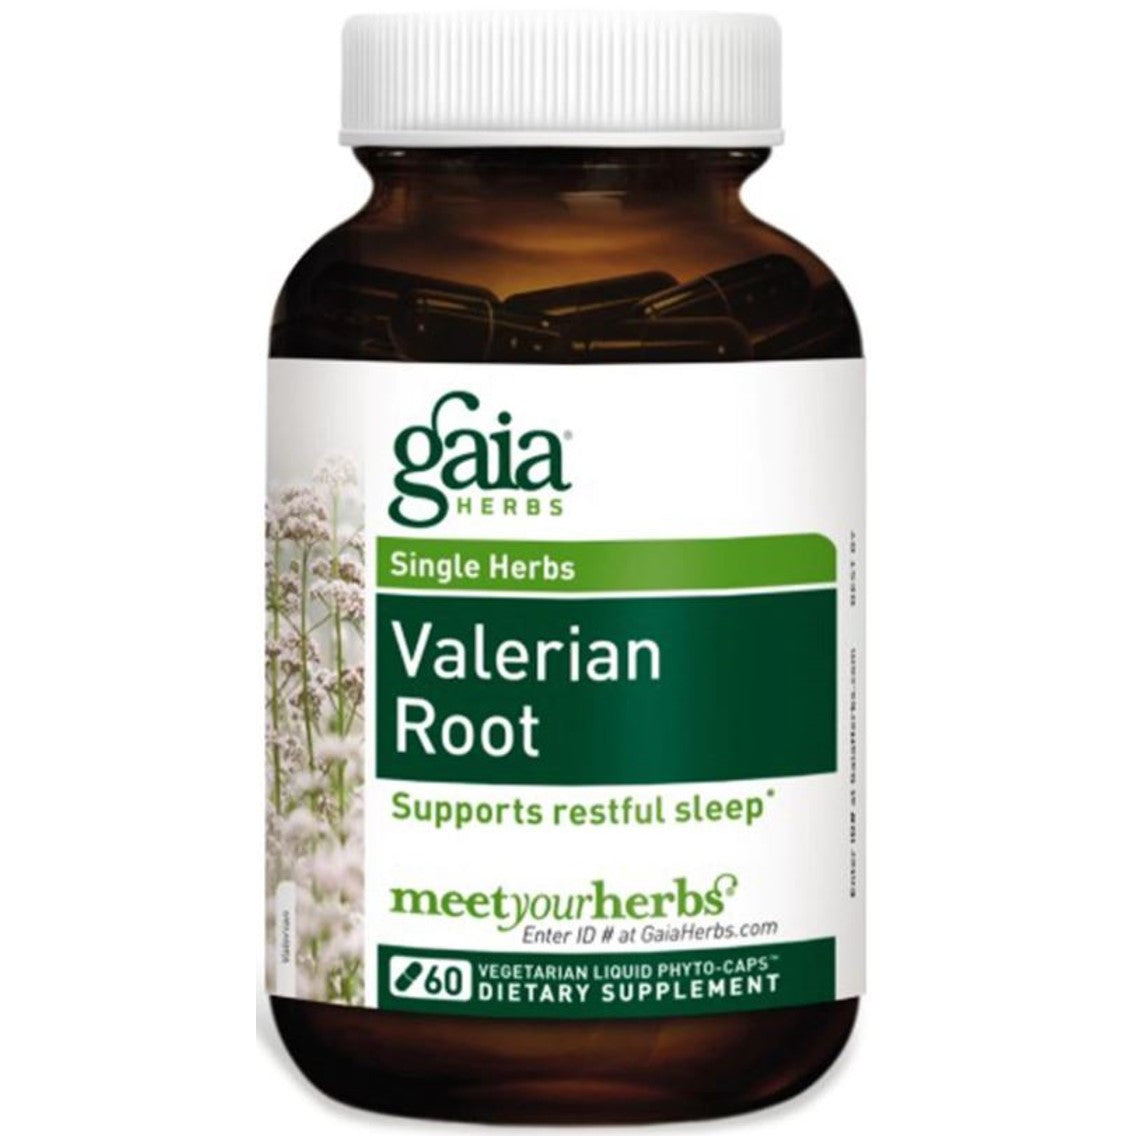 Gaia Herbs Valerian Root Liquid Phyto-Caps, 60 caps.-NaturesWisdom